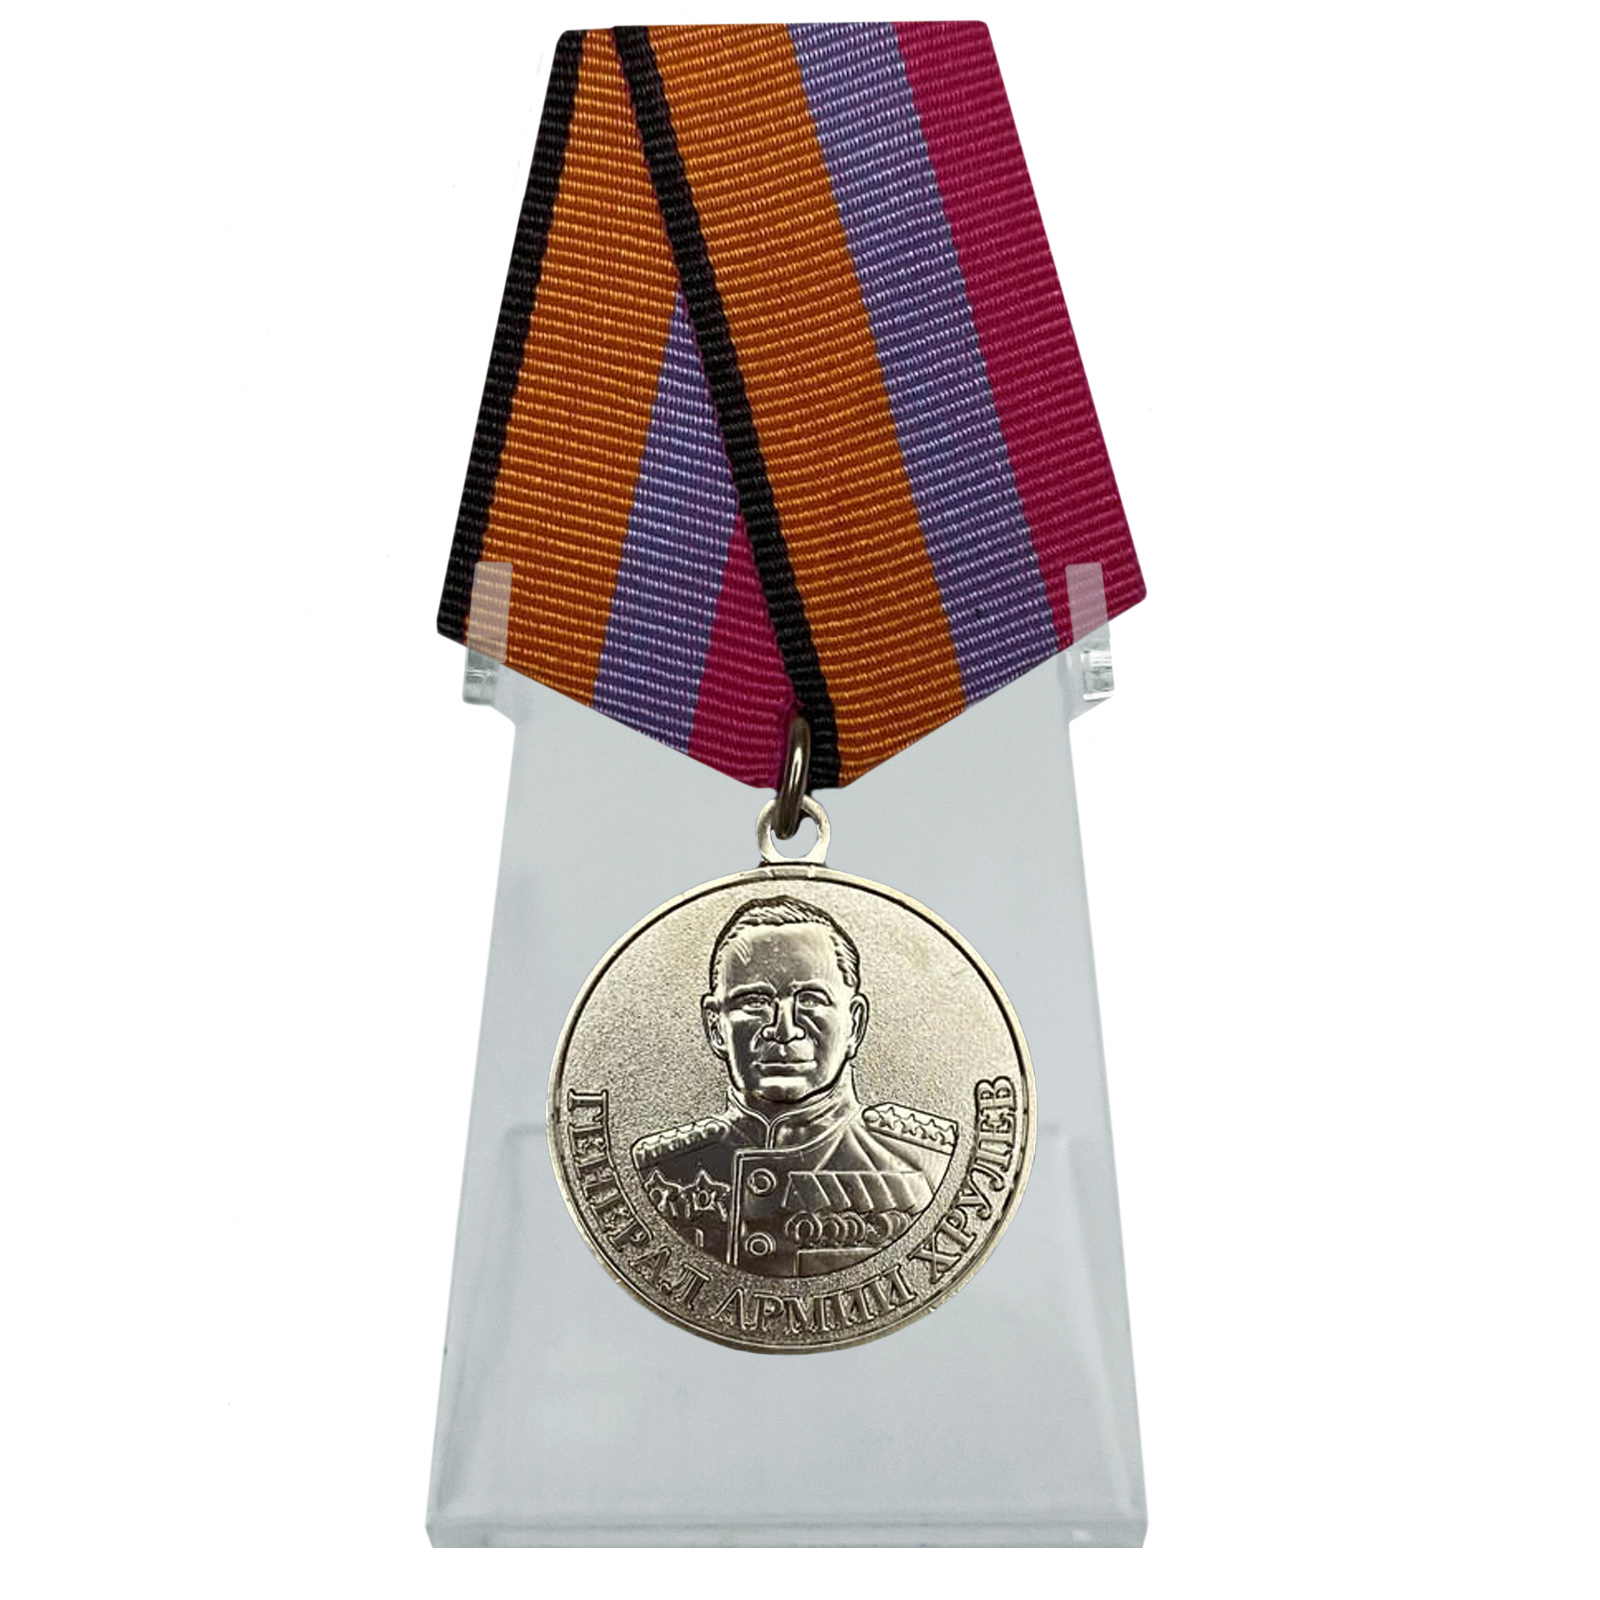 Медаль "Генерал армии Хрулёв" на подставке